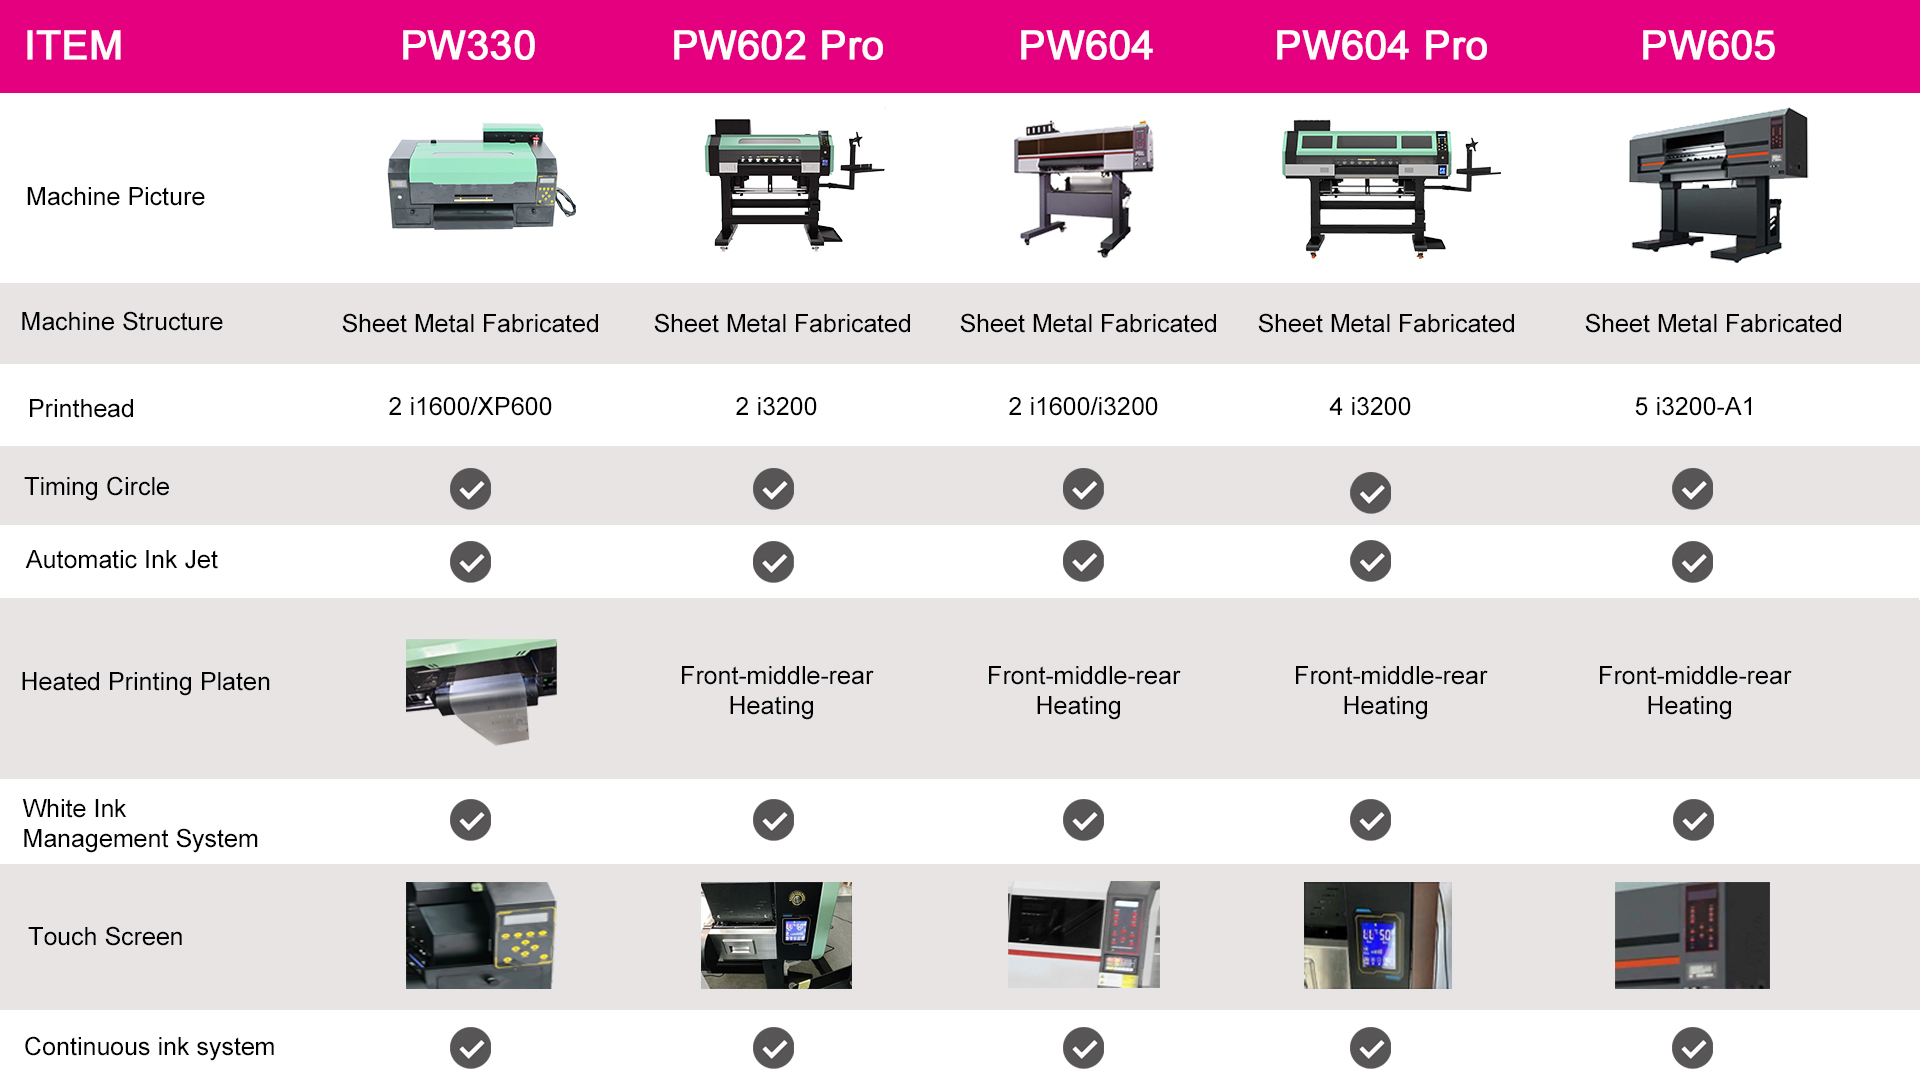 Comparaison des imprimantes PrintWant DTF